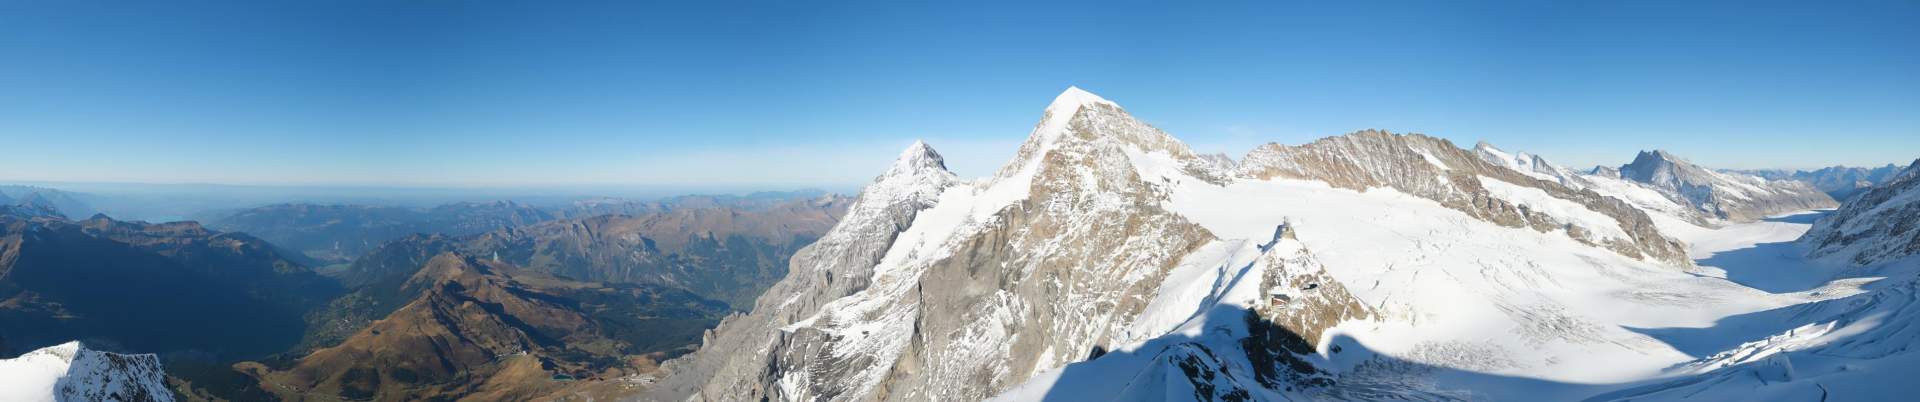 Abb. 1: Herrliches Bergwetter heute (roundshot Jungfraujoch)